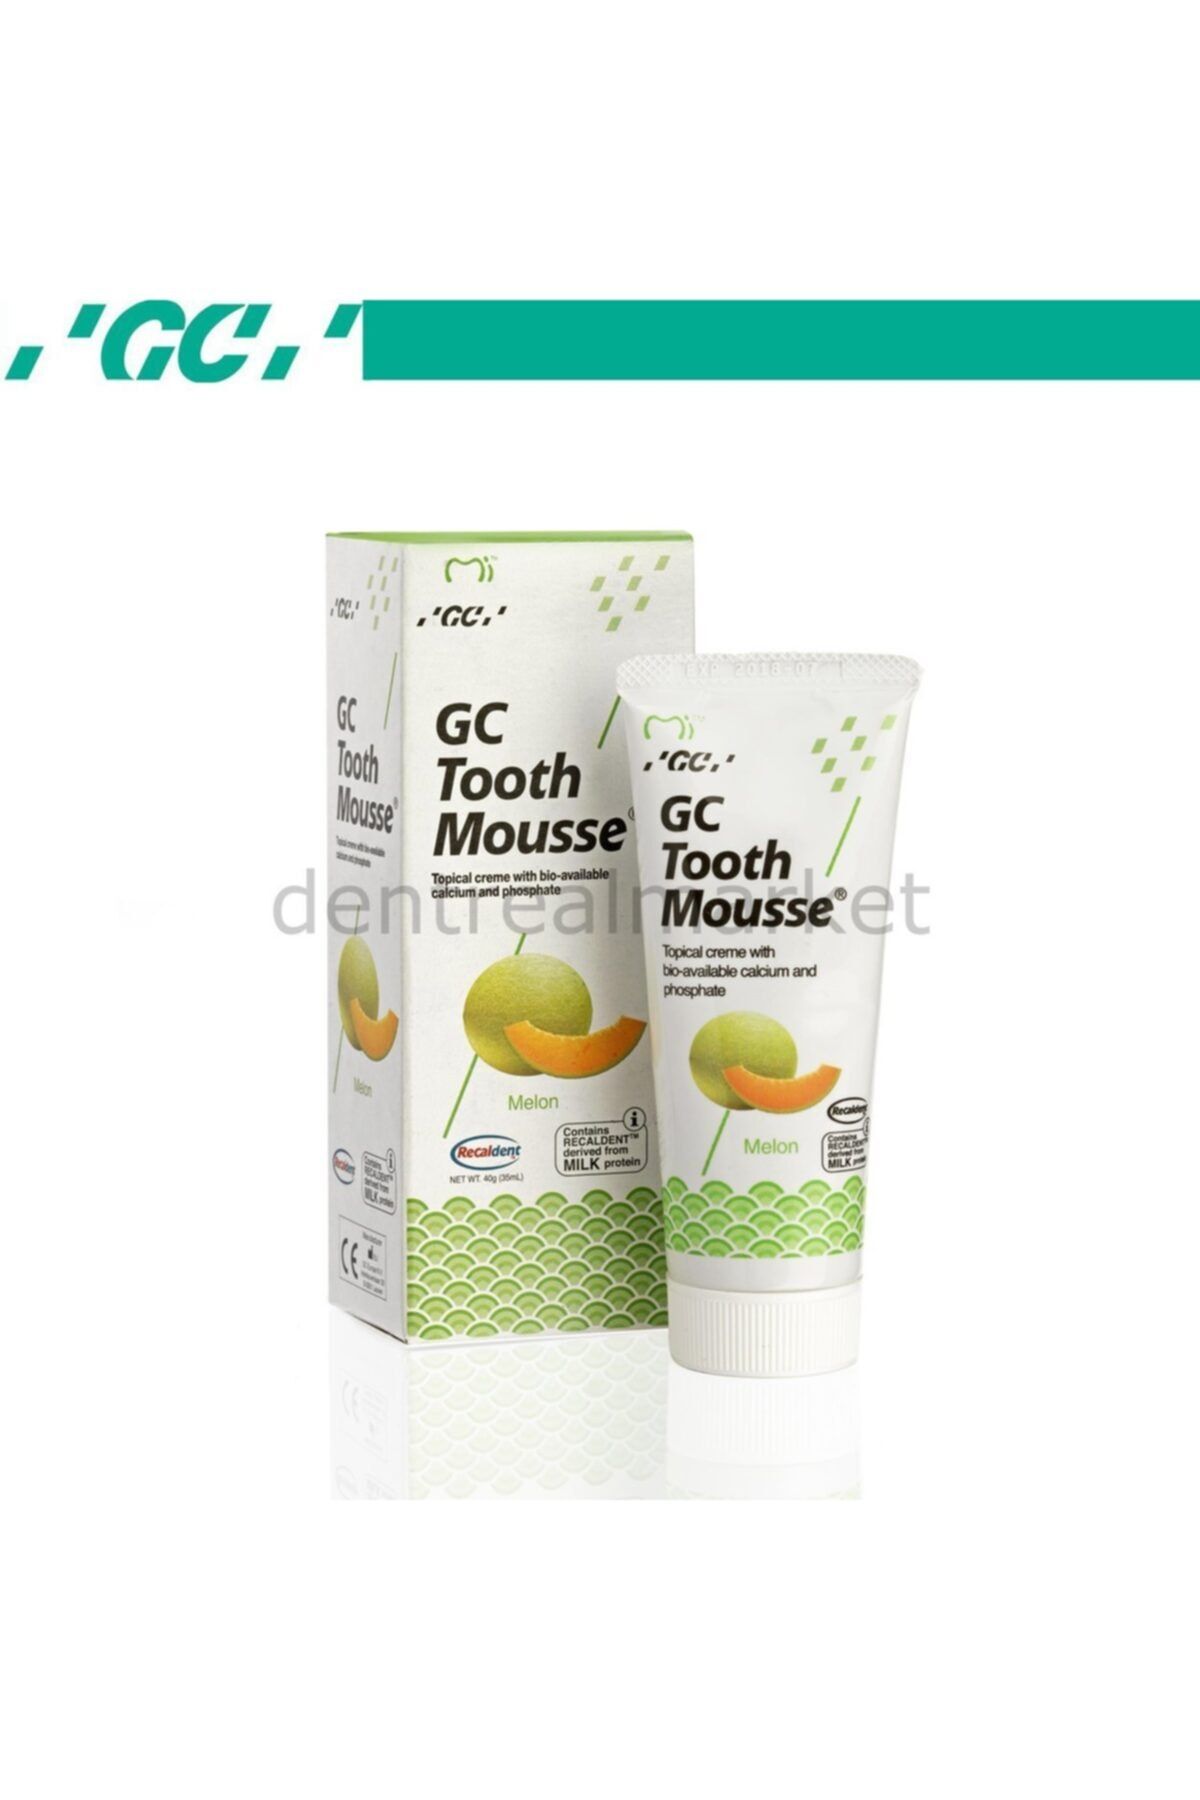 GC Tooth Mousse Çocuklar Için Diş Minelerini Koruyucu Bakım Kremi Macunu 40 Gr Kavun